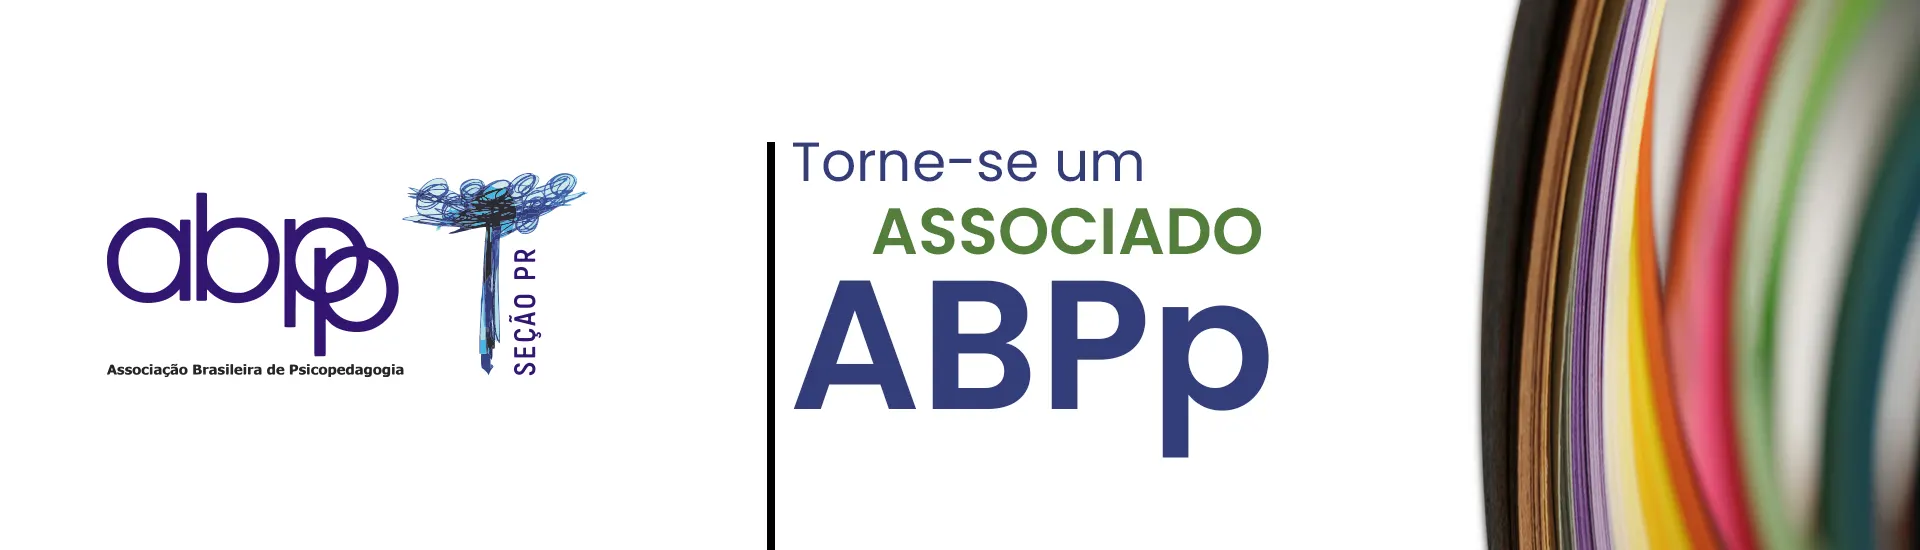 Associação Brasileira de Psicopedagogia Seção Paraná